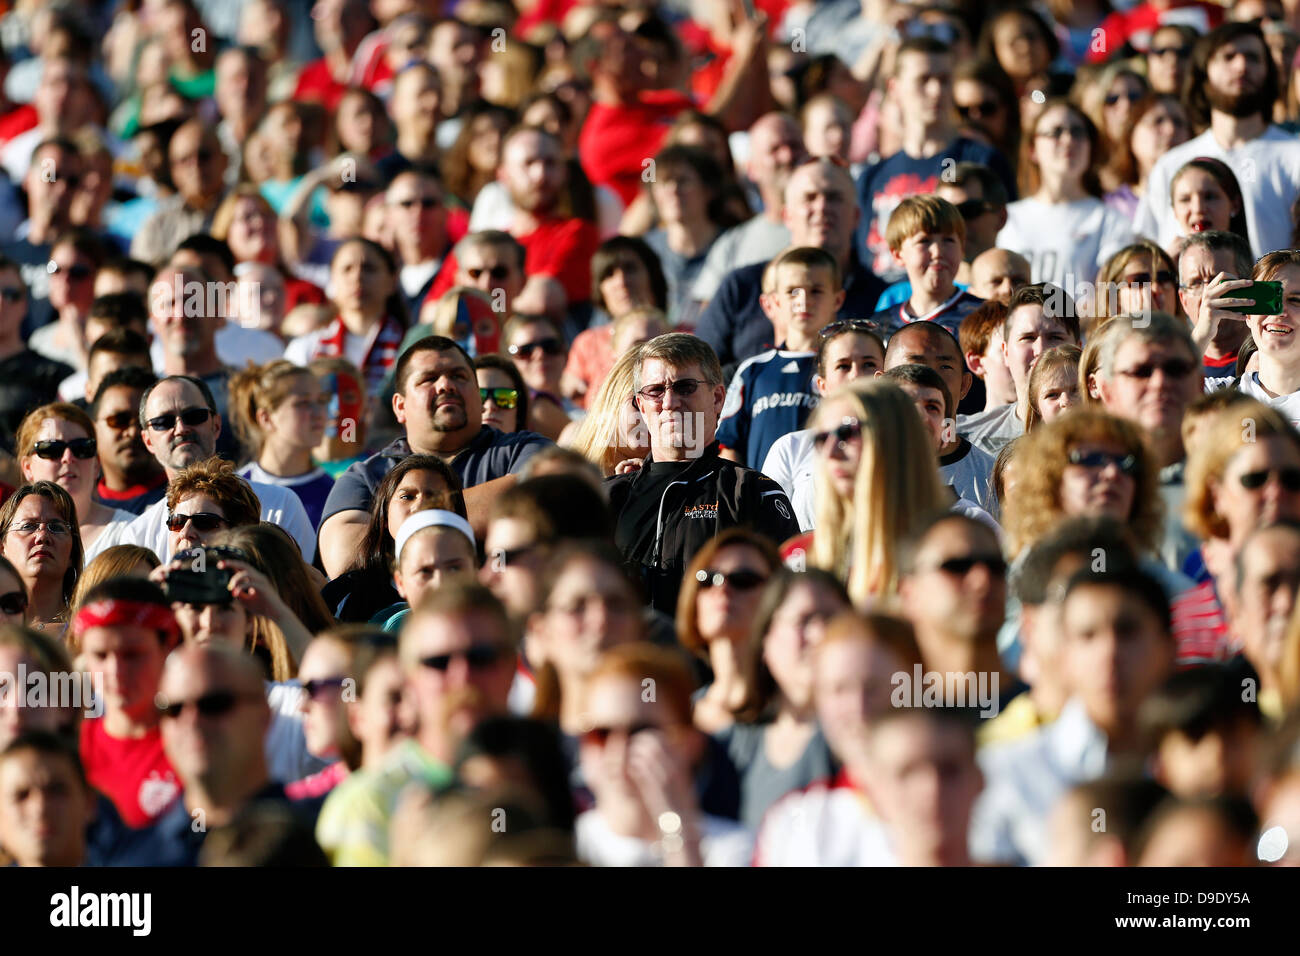 sports stadium crowd, Gillette Stadium, Massachusetts Stock Photo